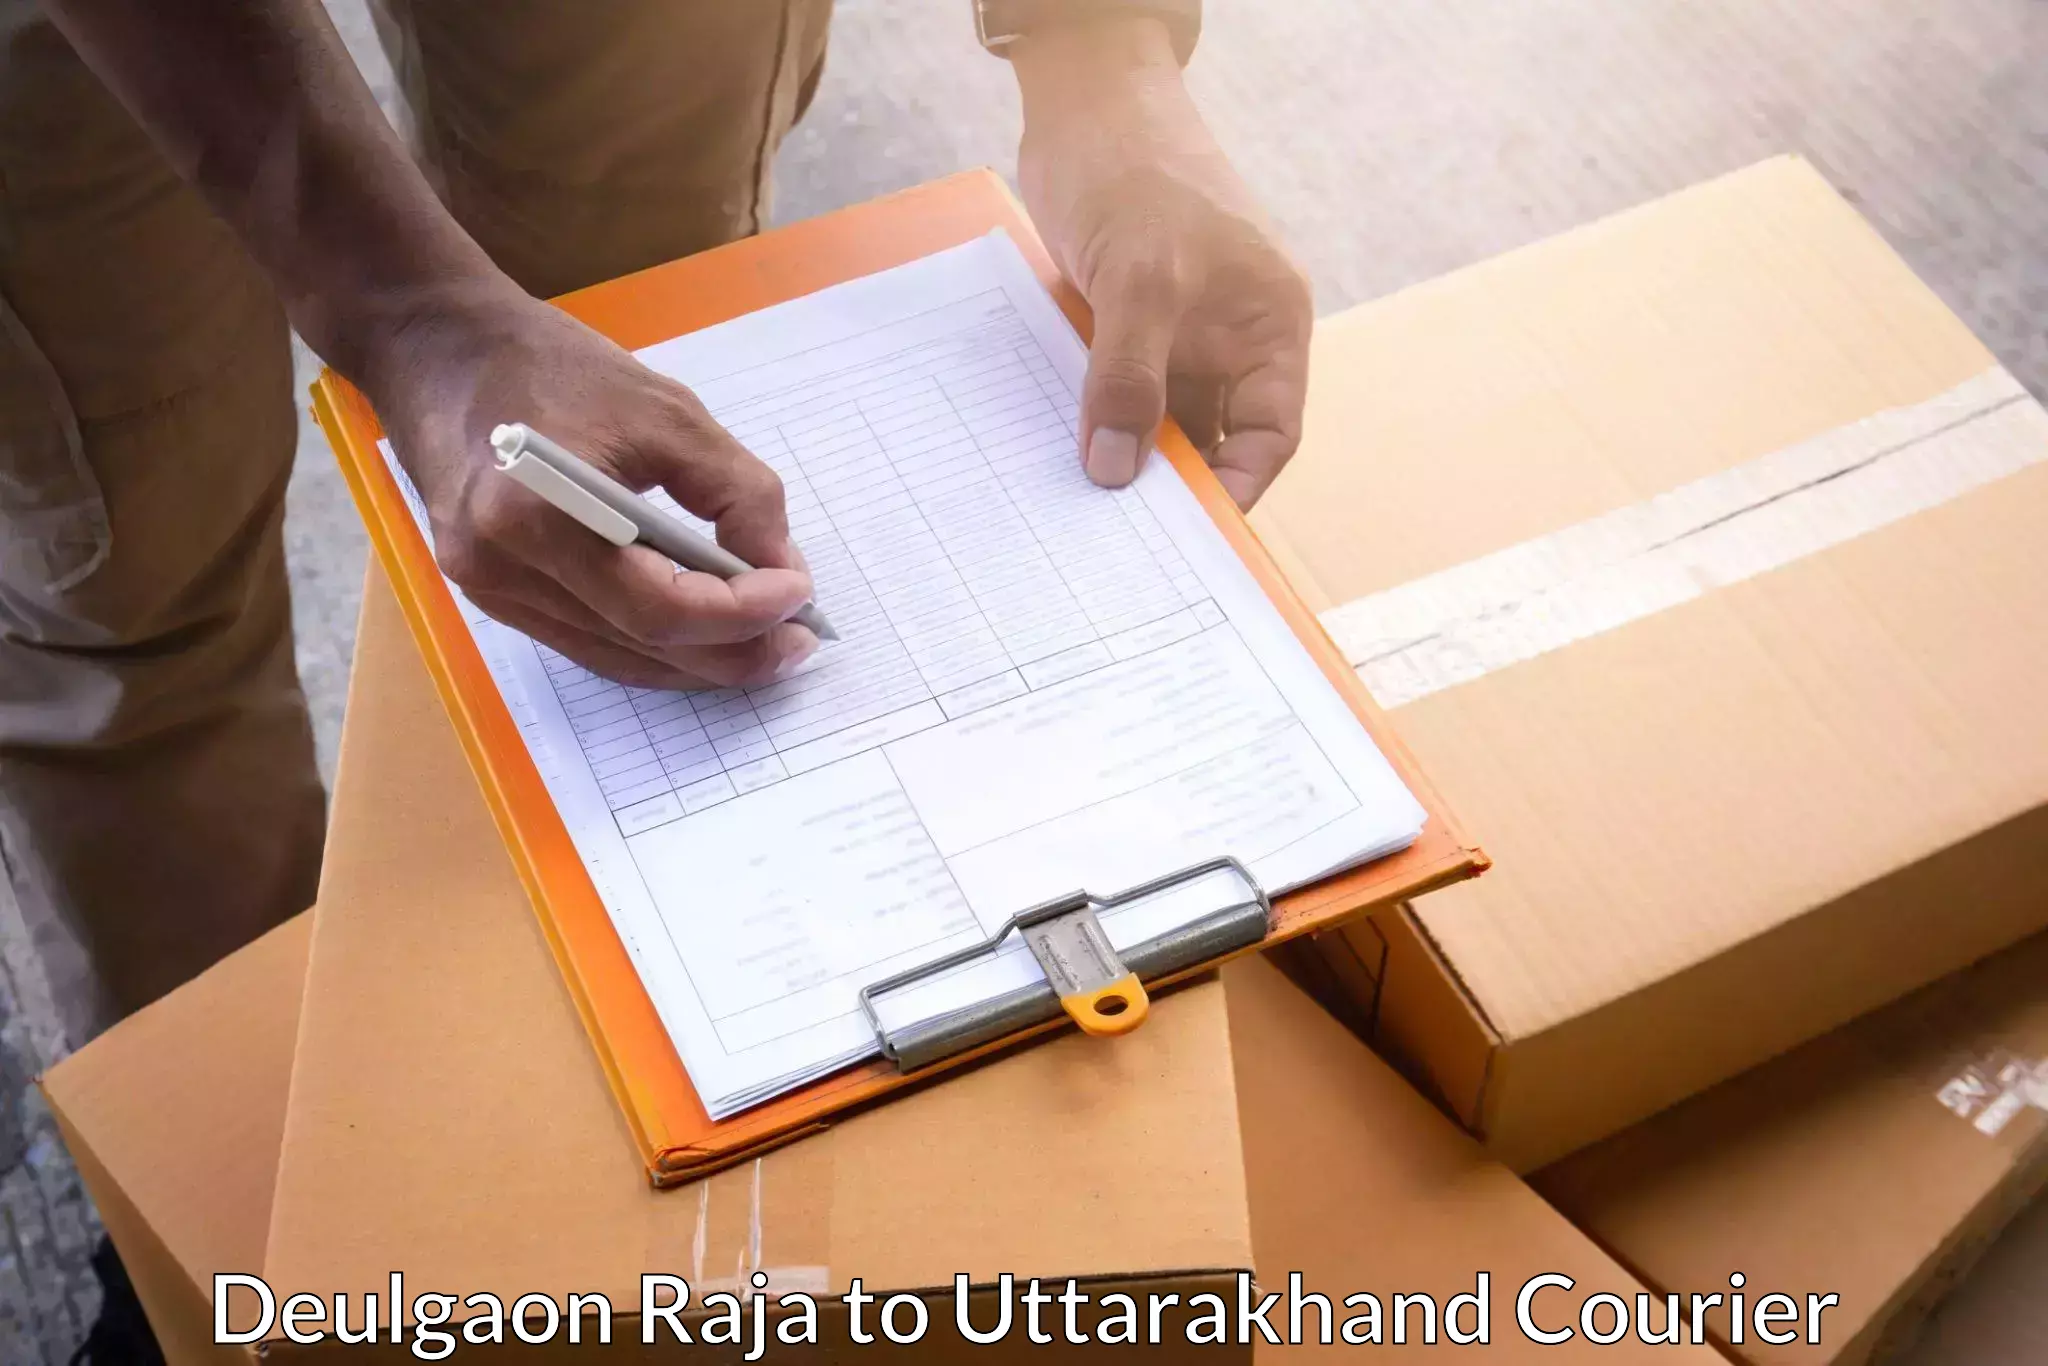 Quality courier partnerships Deulgaon Raja to Uttarakhand